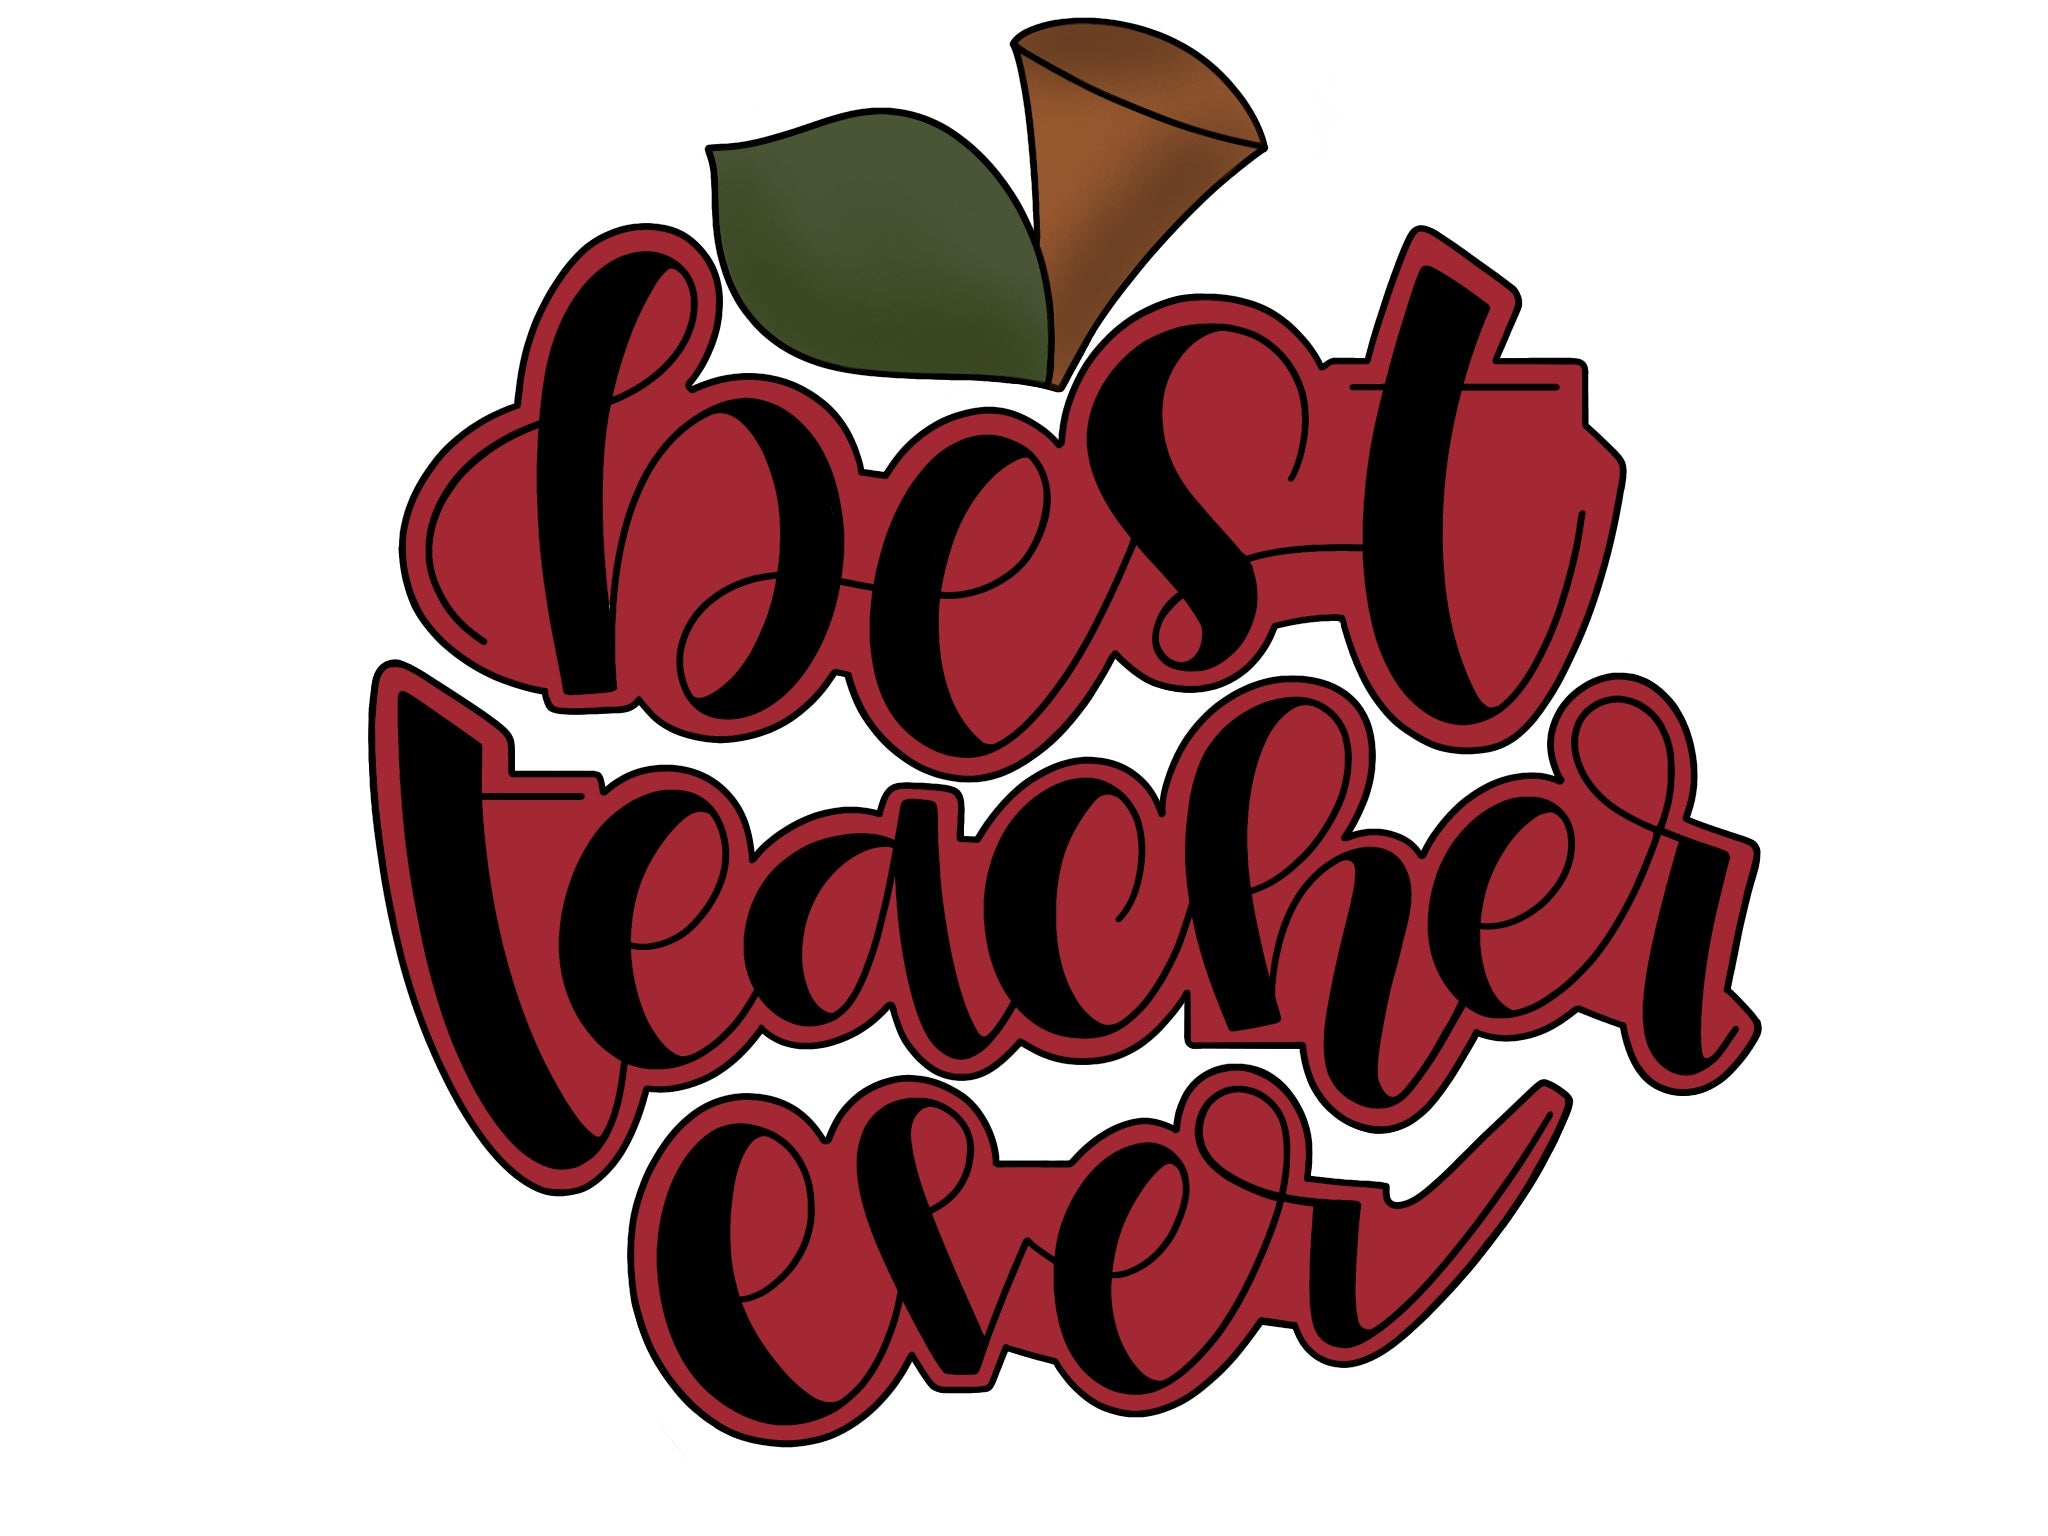 Best Teacher Ever Apple Set